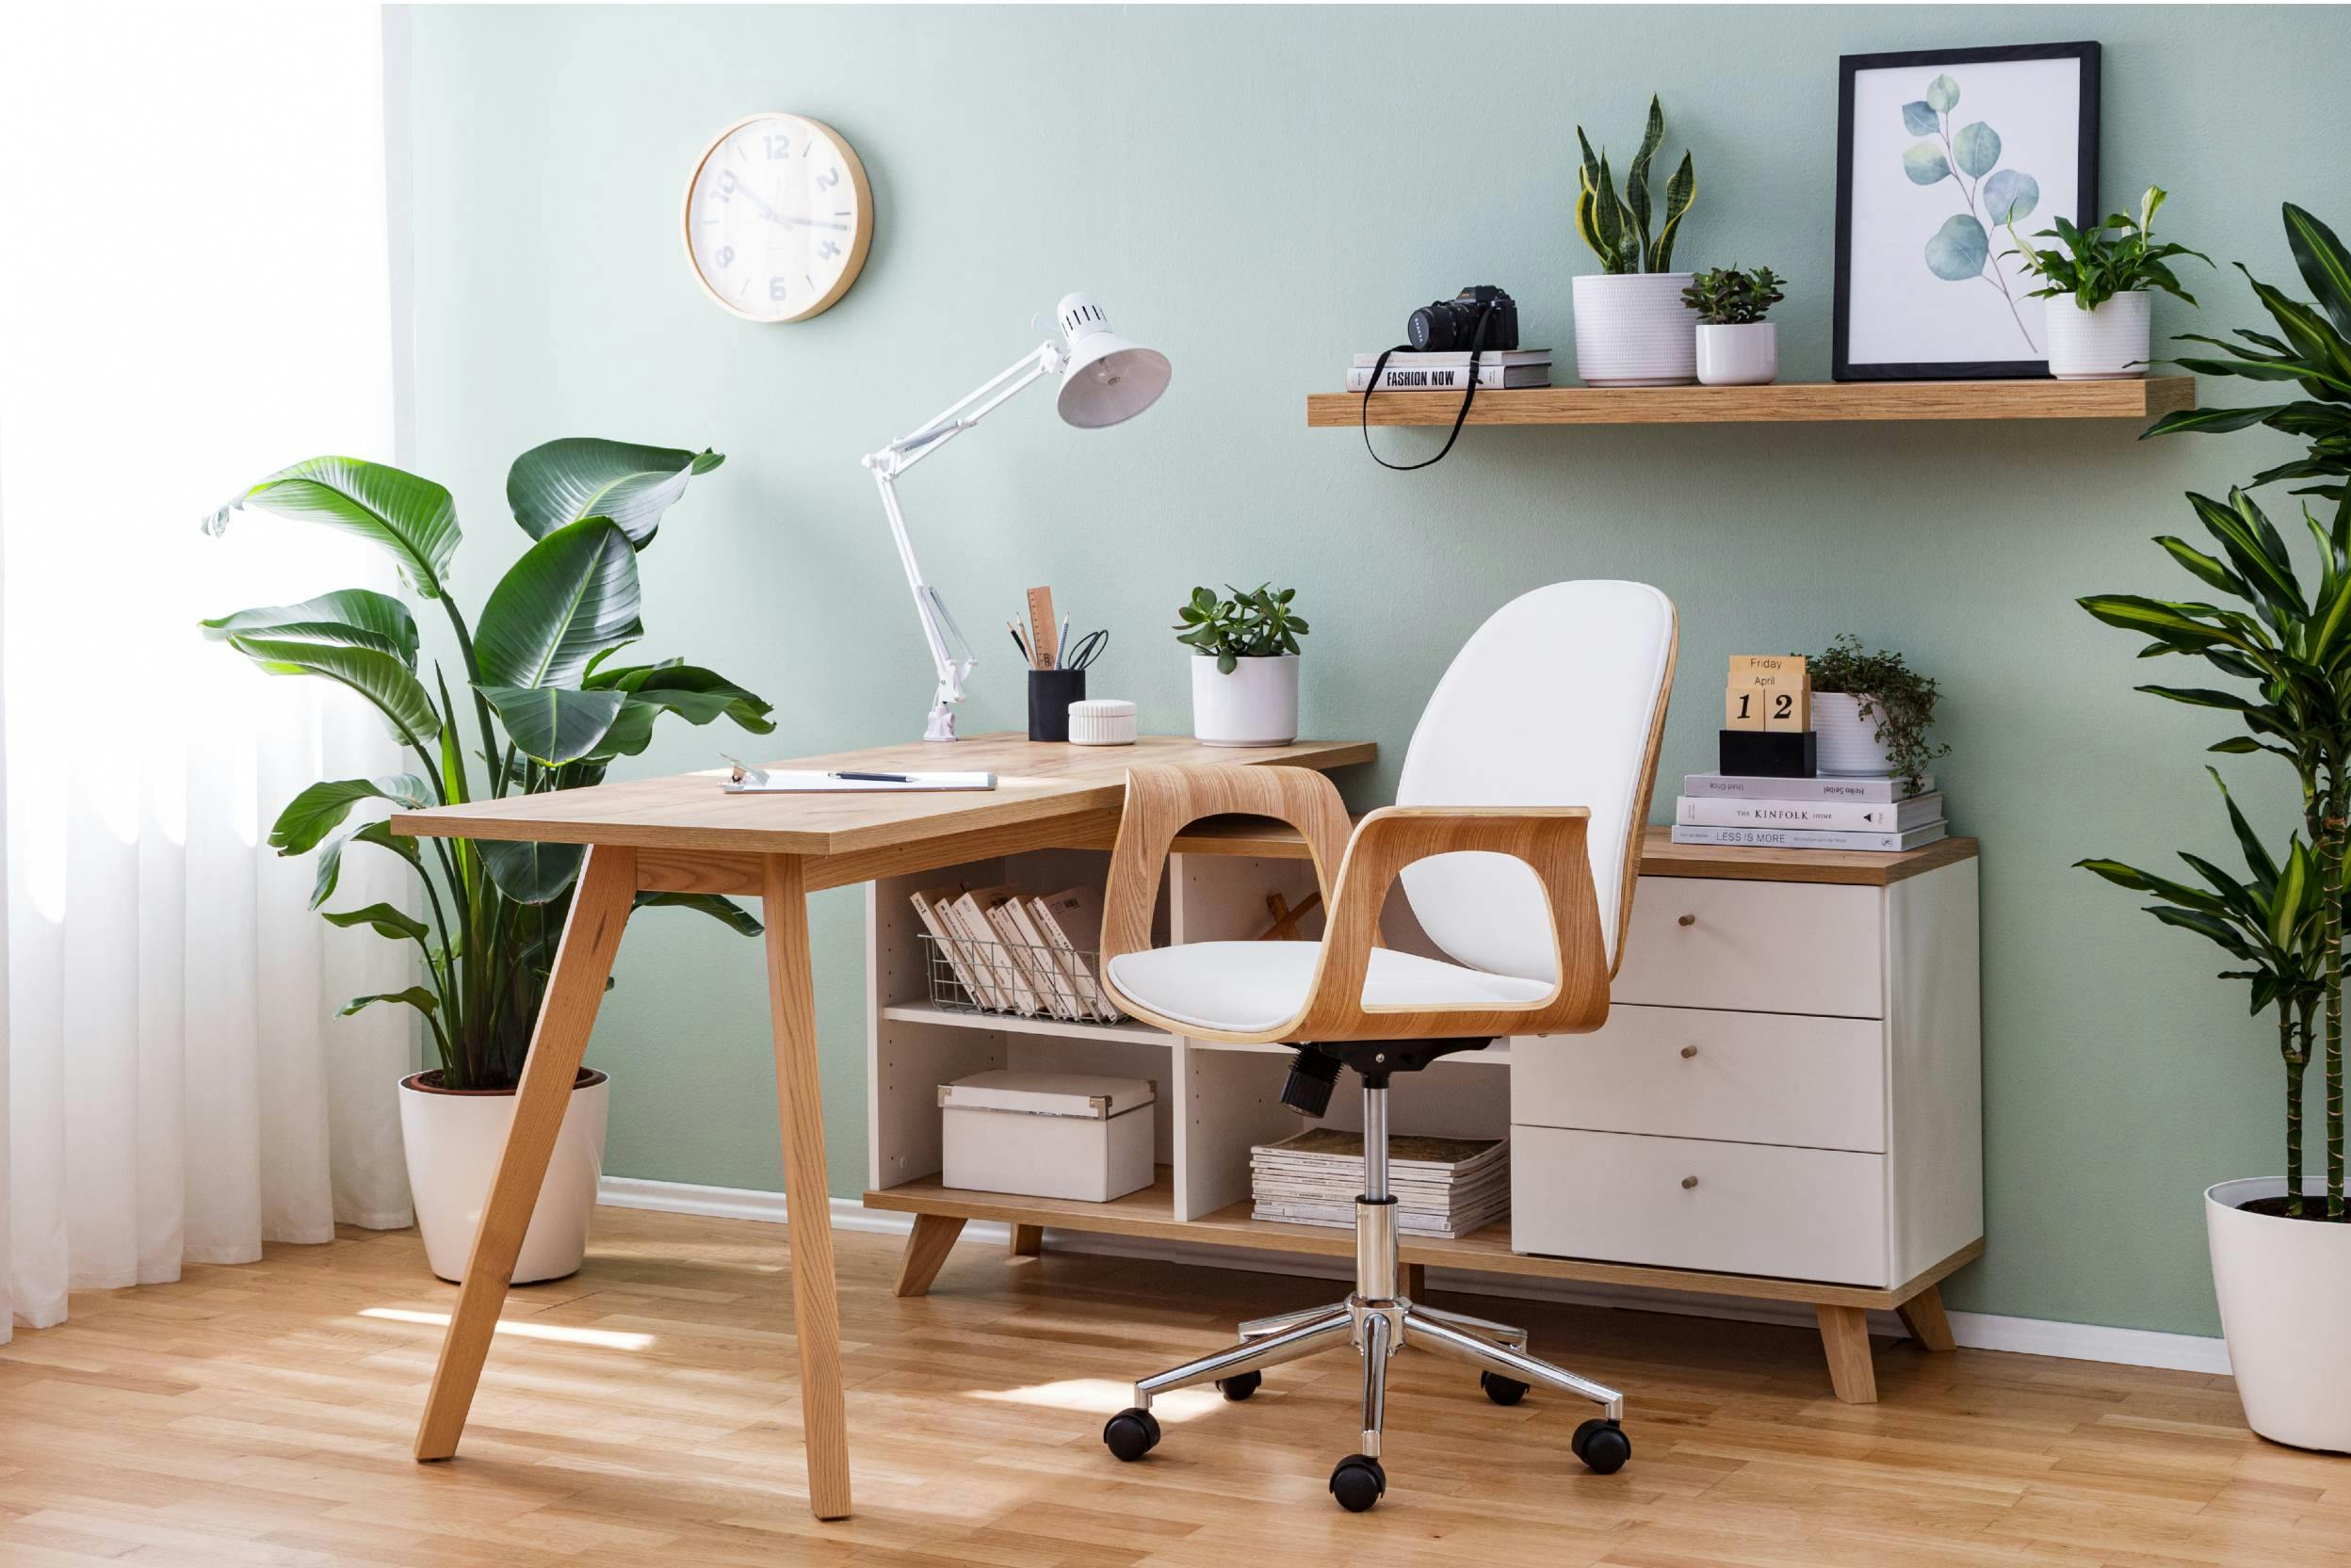 Espace de travail avec chaise, bureau, lampe, plusieurs plantes décoratives et un mur de couleur vert pastel apaisant